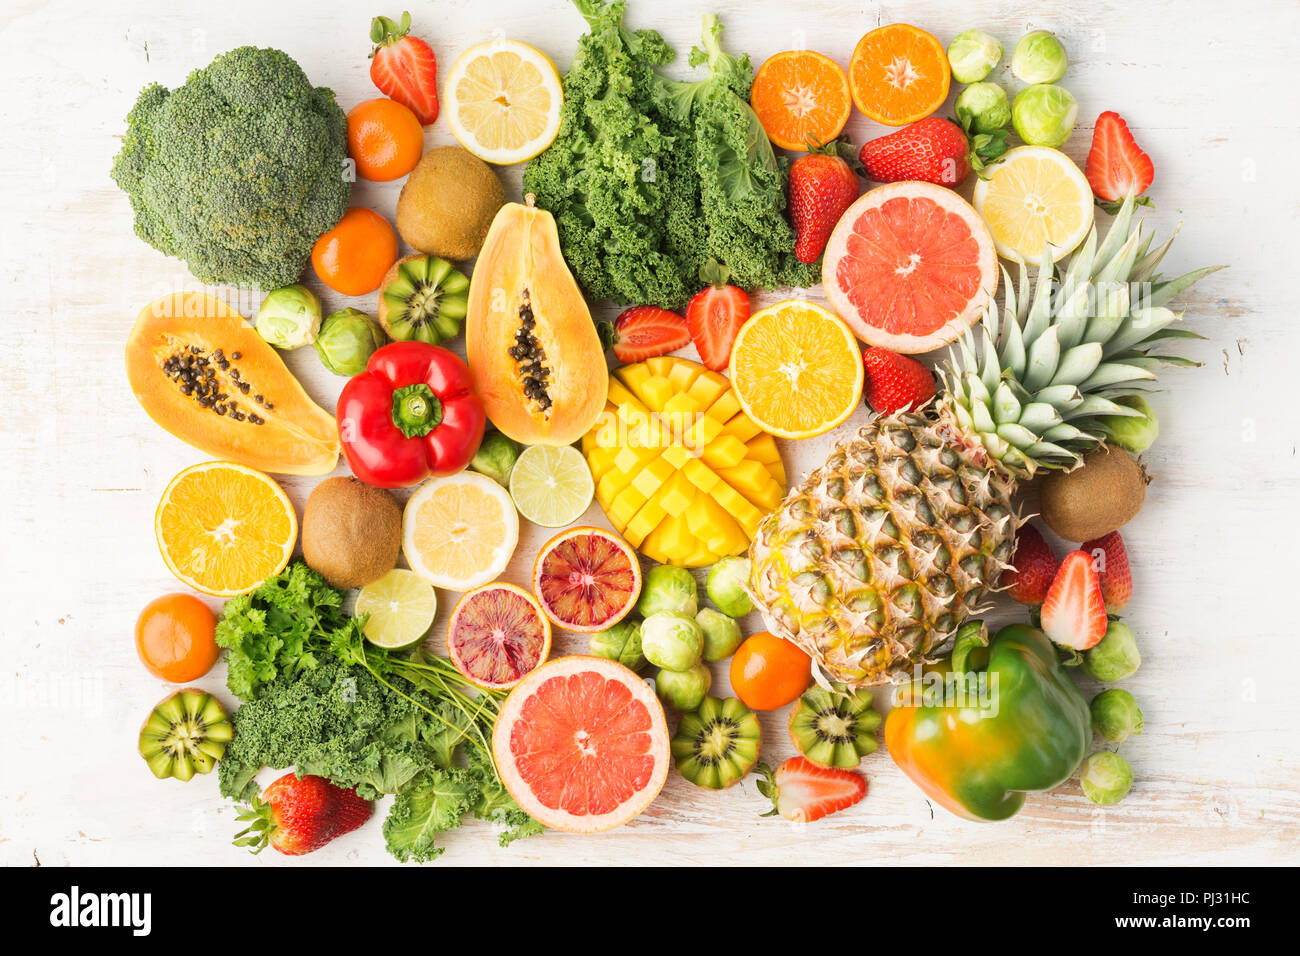 Les fruits et légumes riches en vitamine C disposés en rectangle, les oranges pamplemousse kiwi mangue ananas choux citron poivre chou brocoli papaye, sur le tableau blanc, vue du dessus, selective focus Banque D'Images